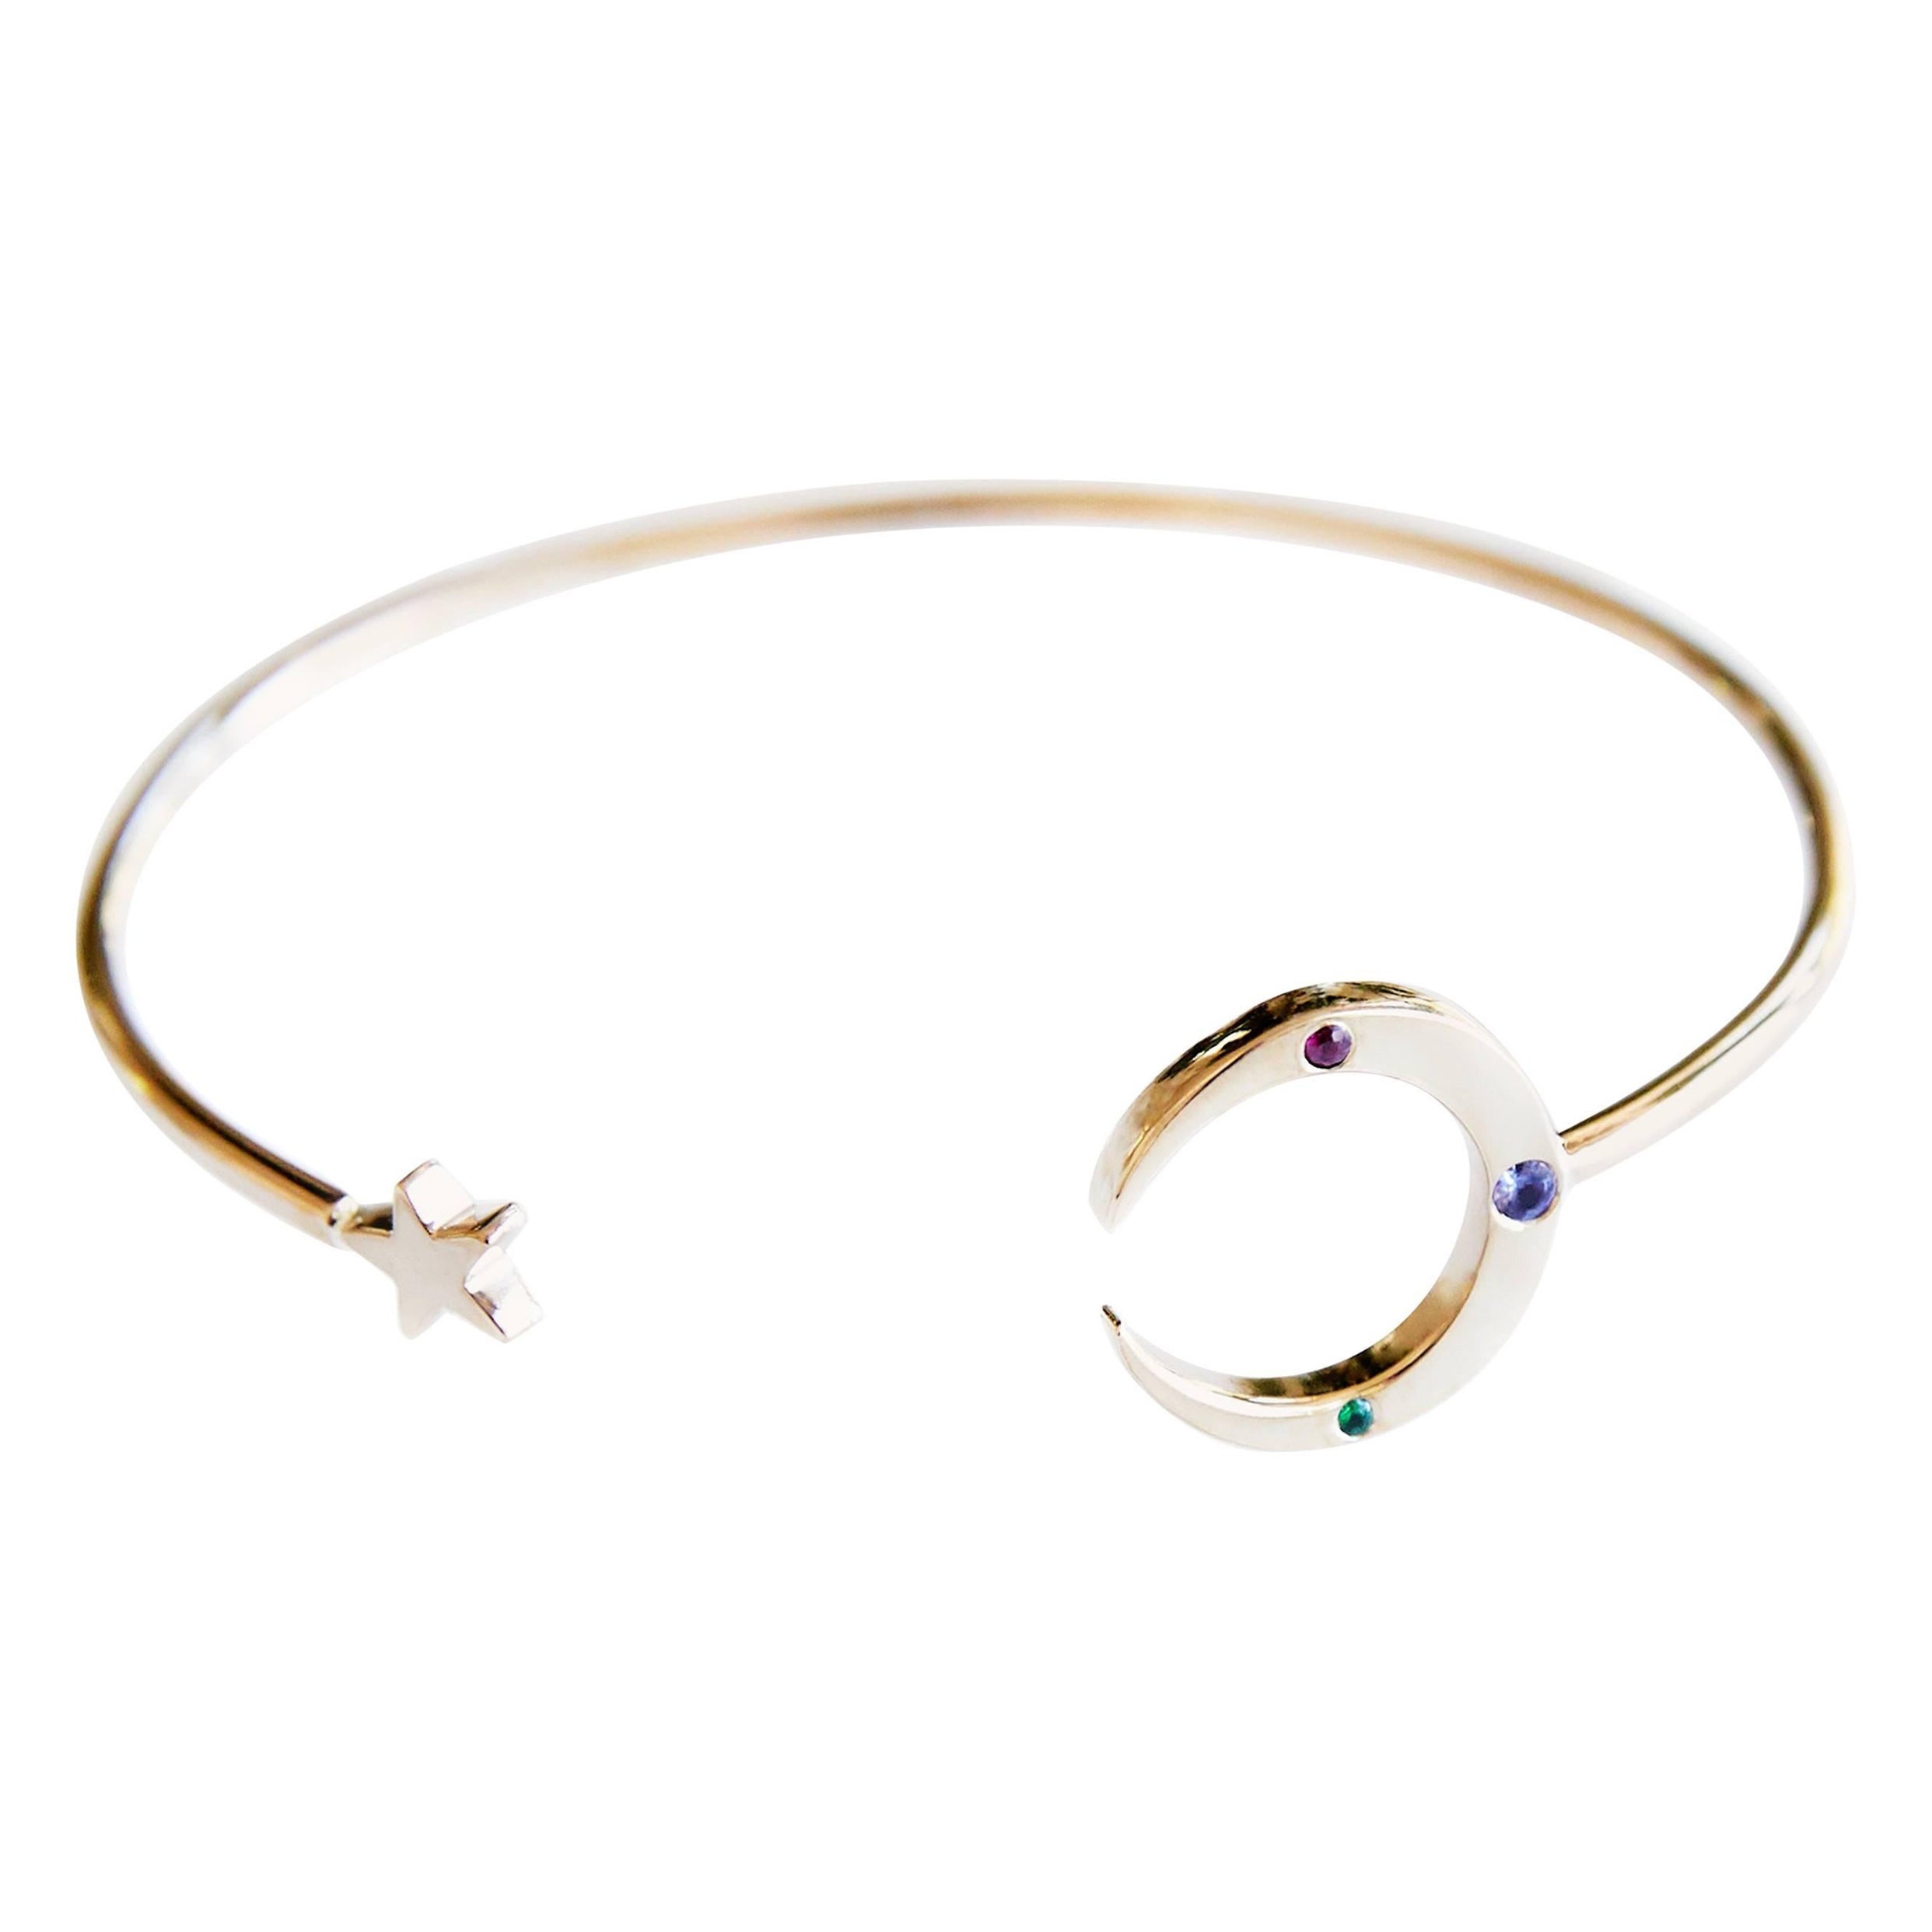 Natural Blue Tanzanite Gemstone Bangle Bracelet / Adjustable Bangle /  Bracelets for Women / Gifts for Her / Cuff Bracelet / Antique Bracelet -  Etsy